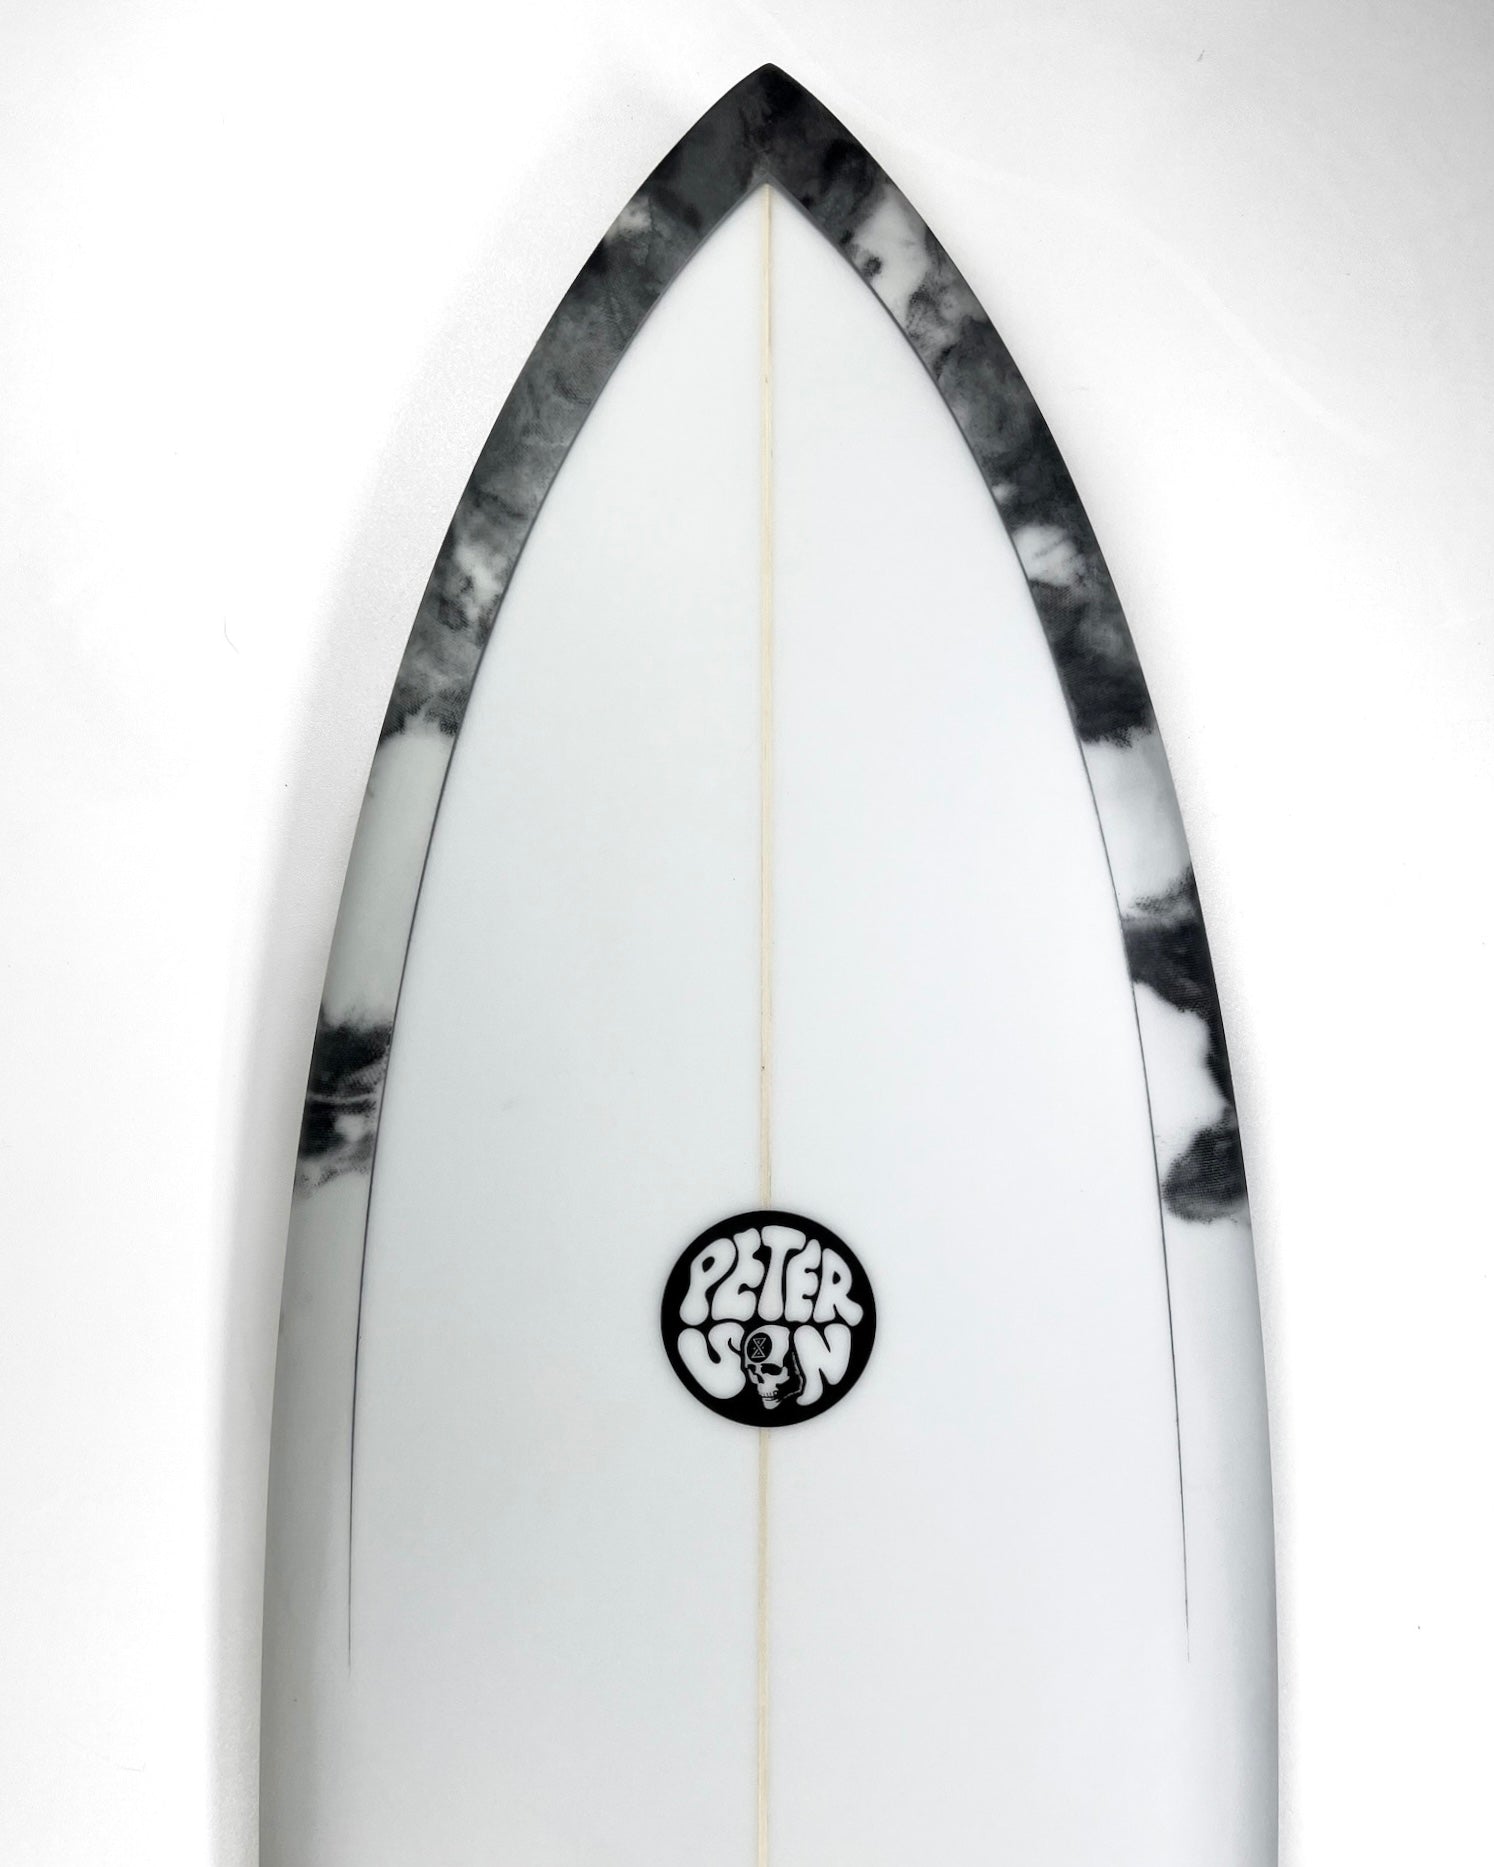 Ghost Ship x Josh Peterson Rorschach Fish Surfboard 5'10" - GHOSTSHIP.Supply